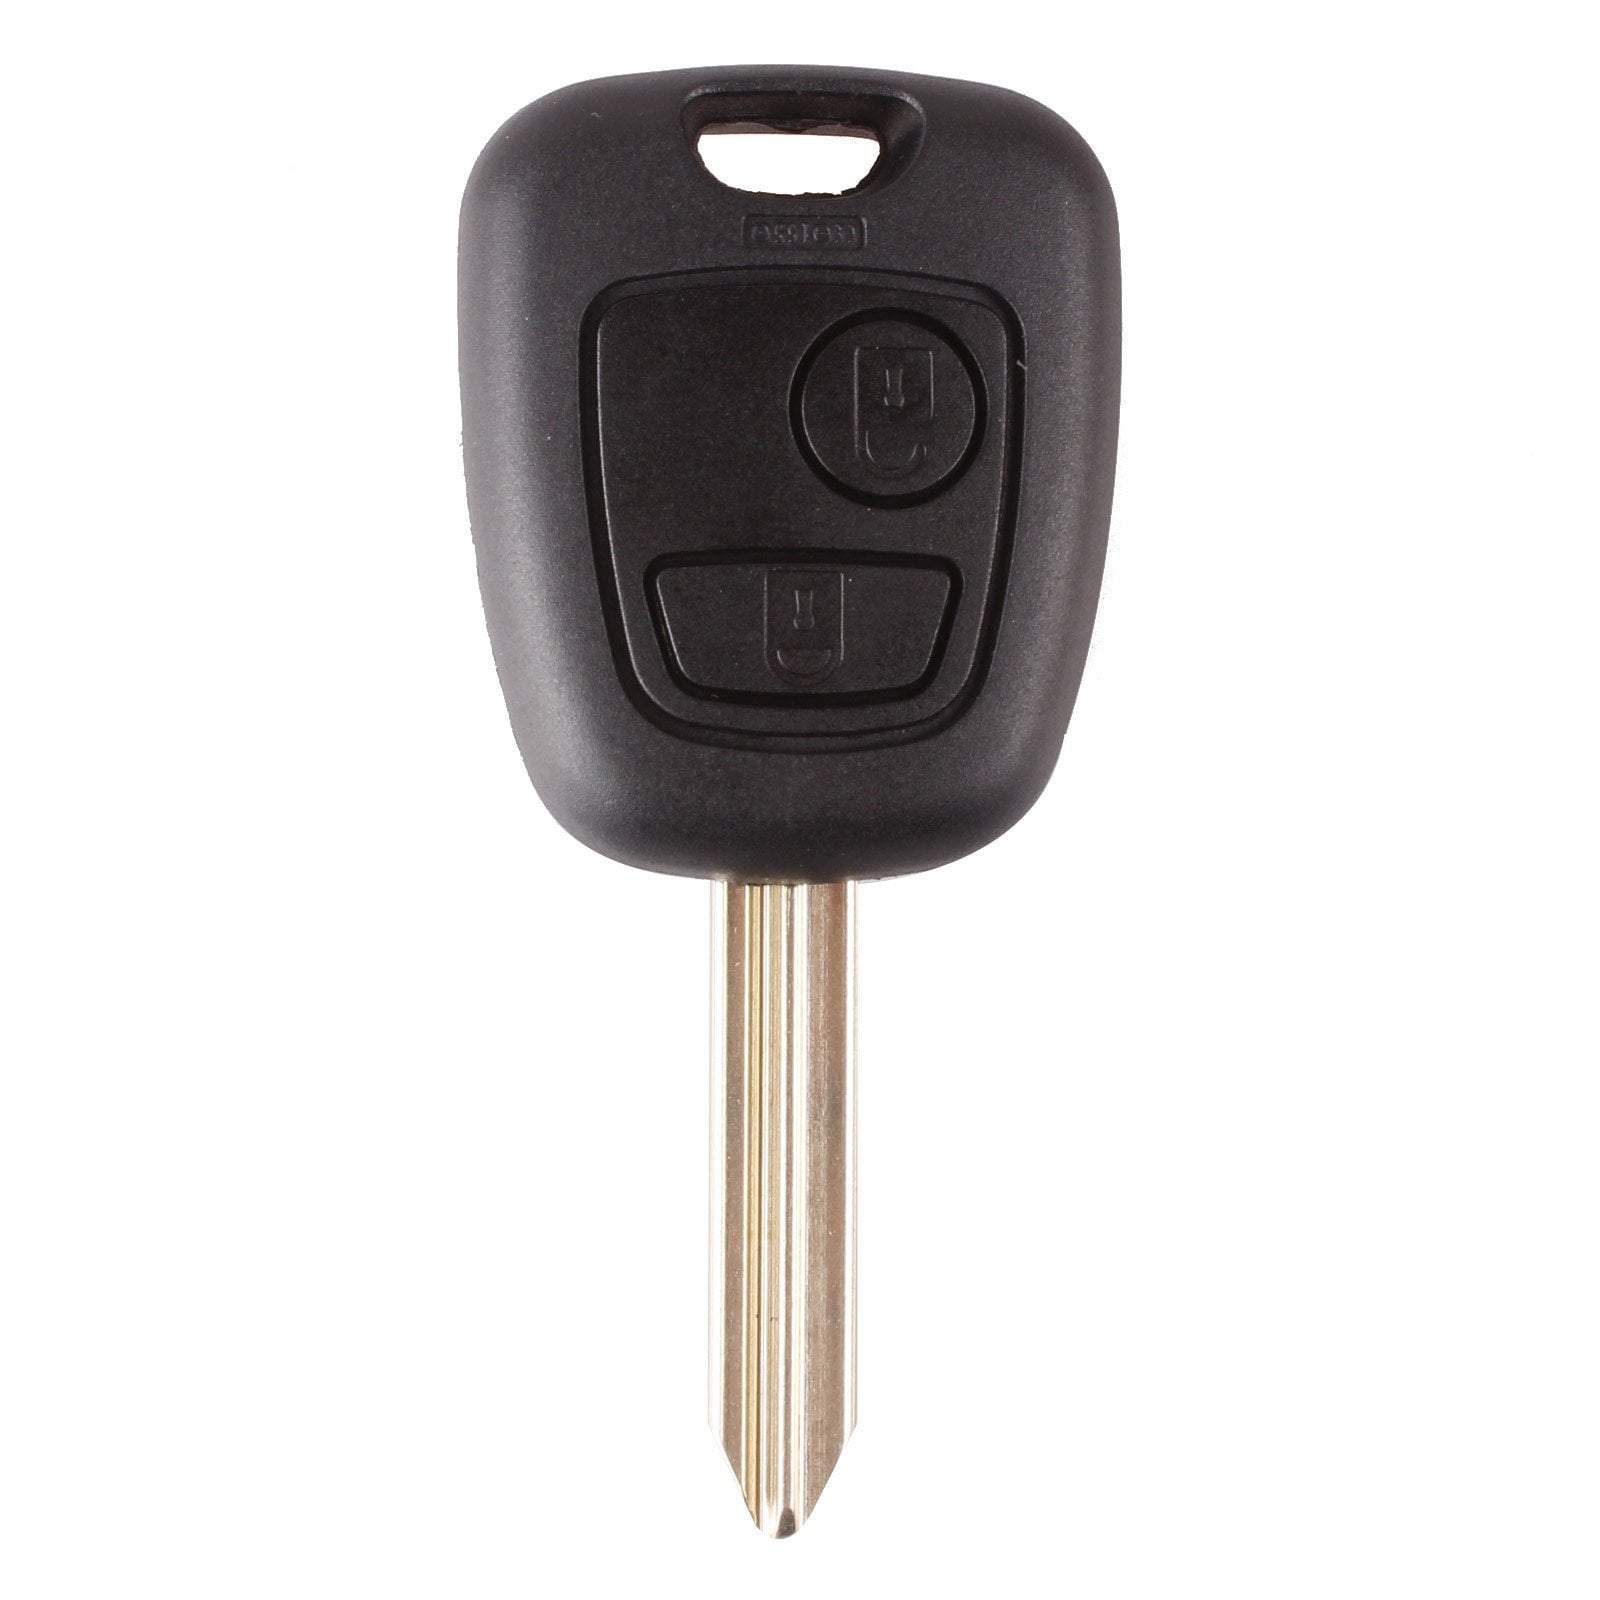 Fekete színű, 2 gombos Citroen kulcs, kulcsház SX9 kulcsszárral.